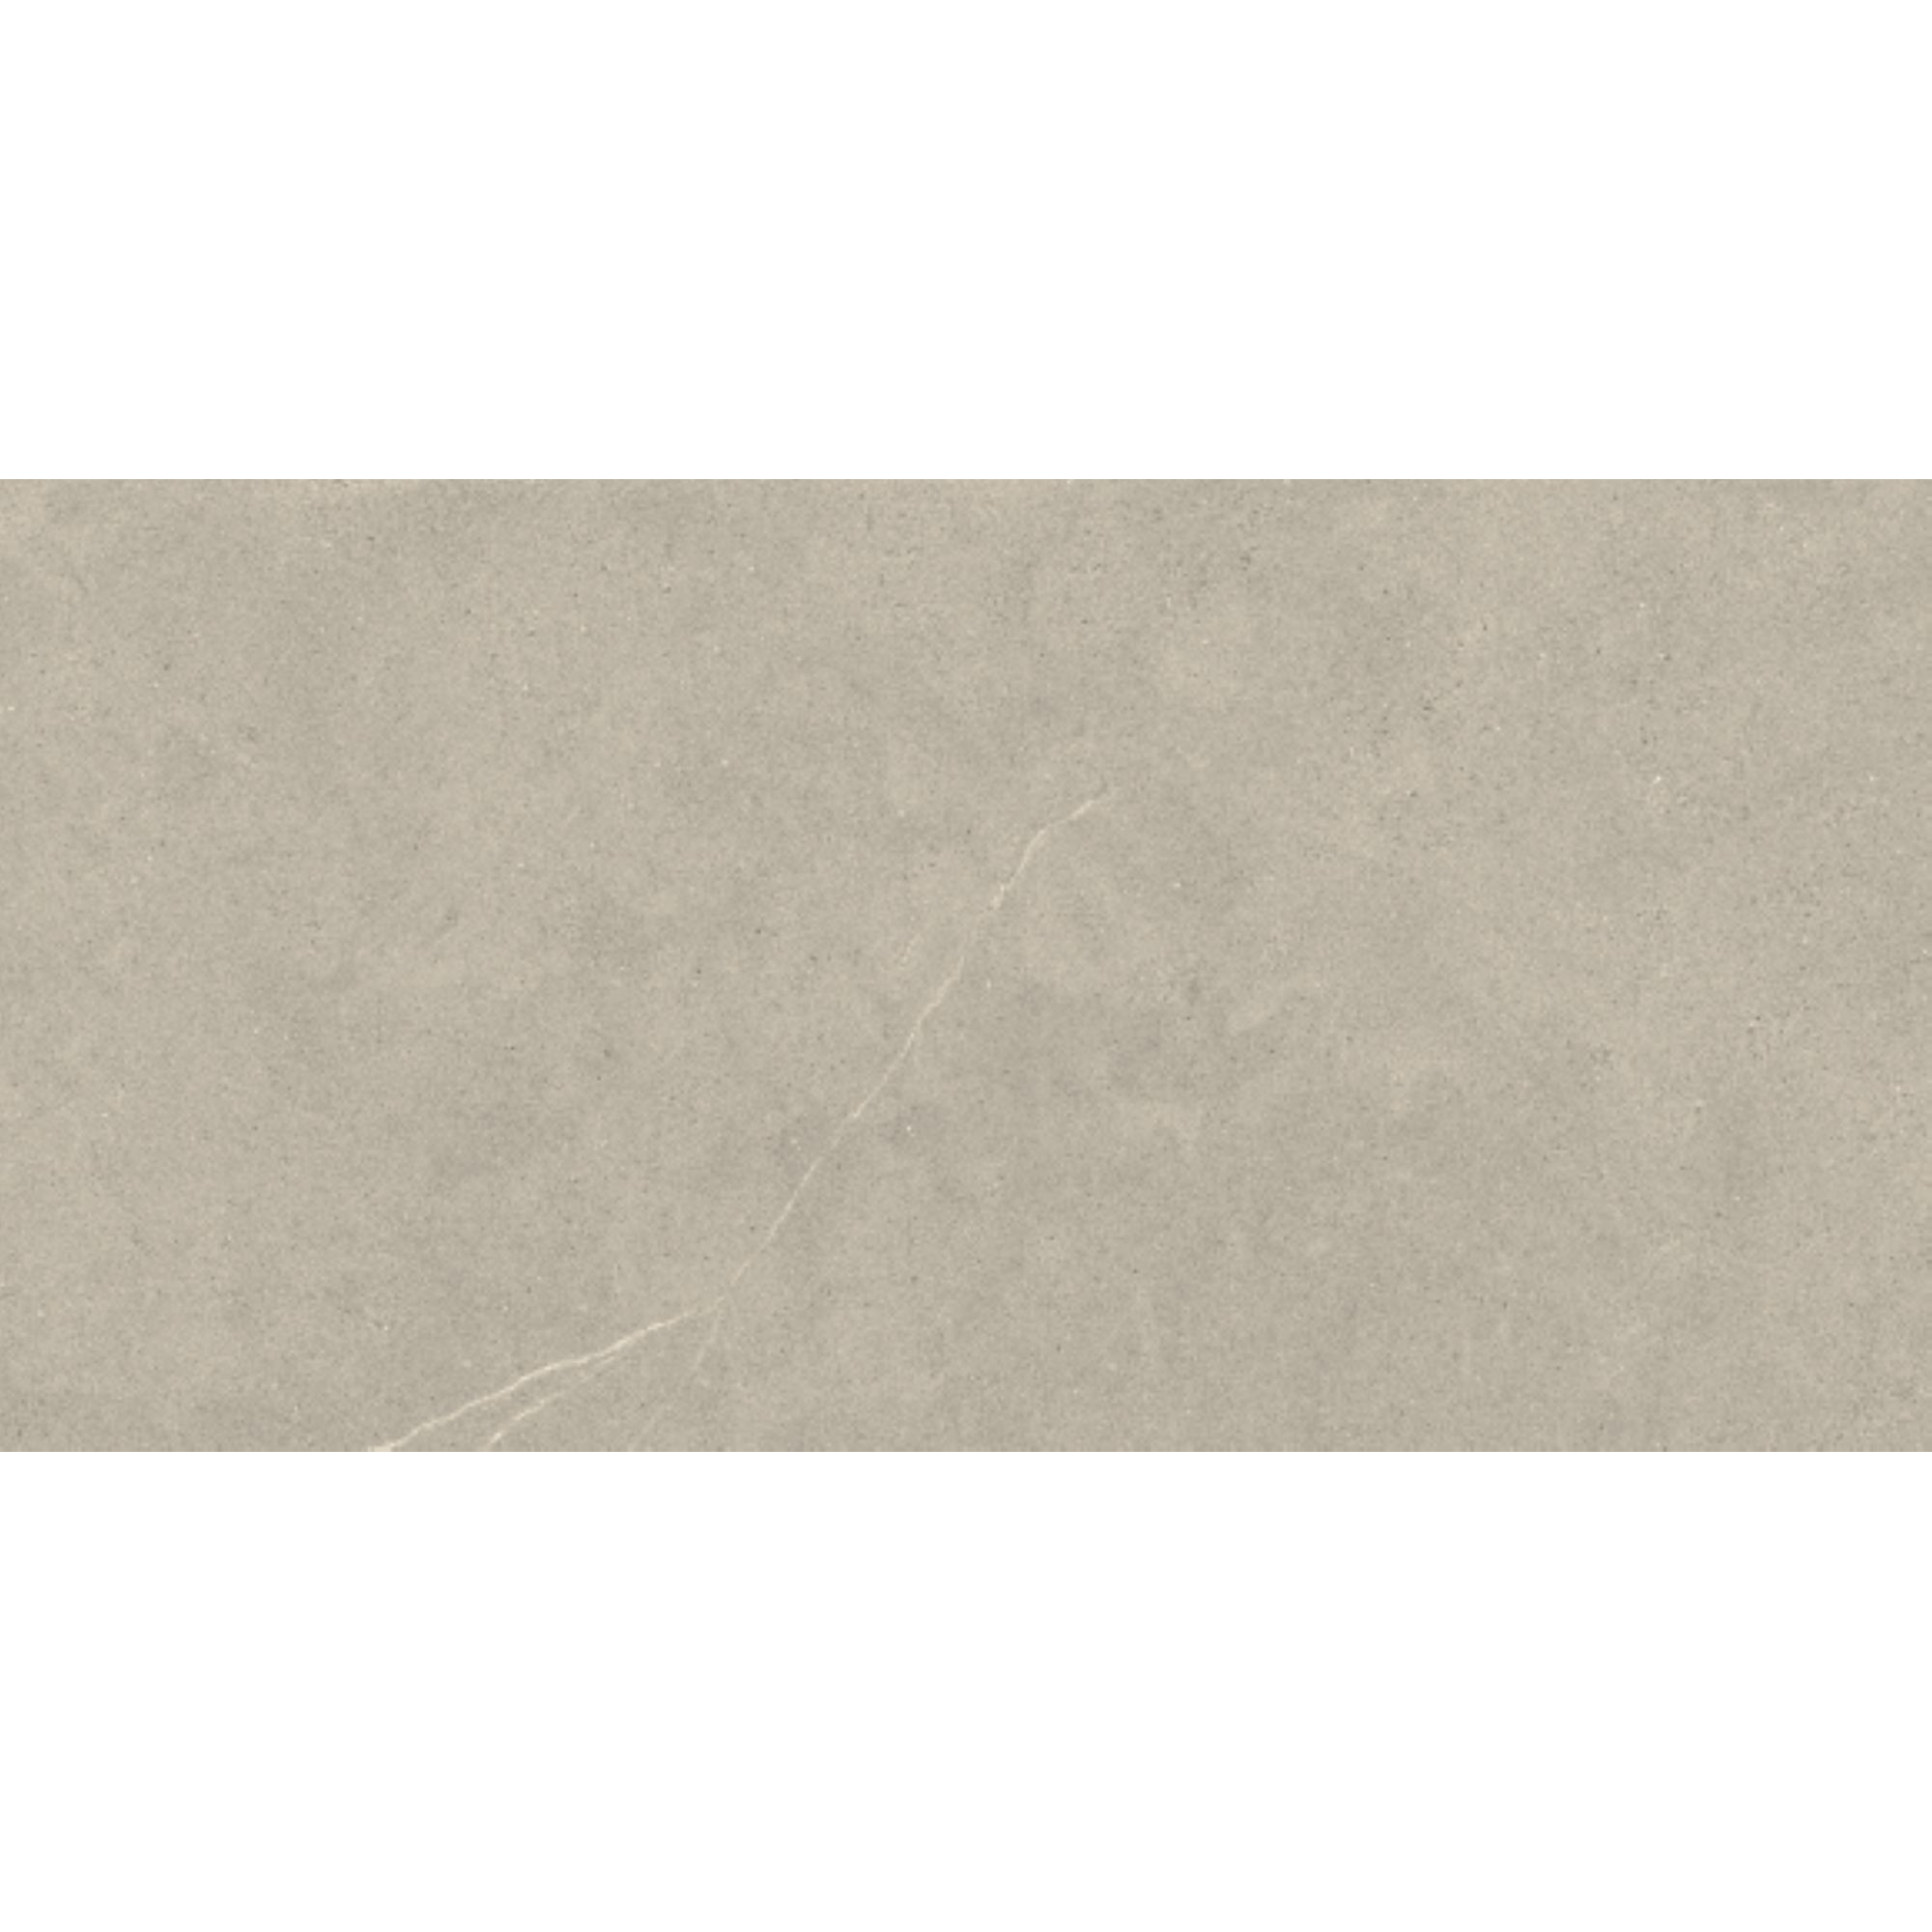 Bodenfliese 'Hardy' Feinsteinzeug beige-braun 60 x 120 cm + product picture